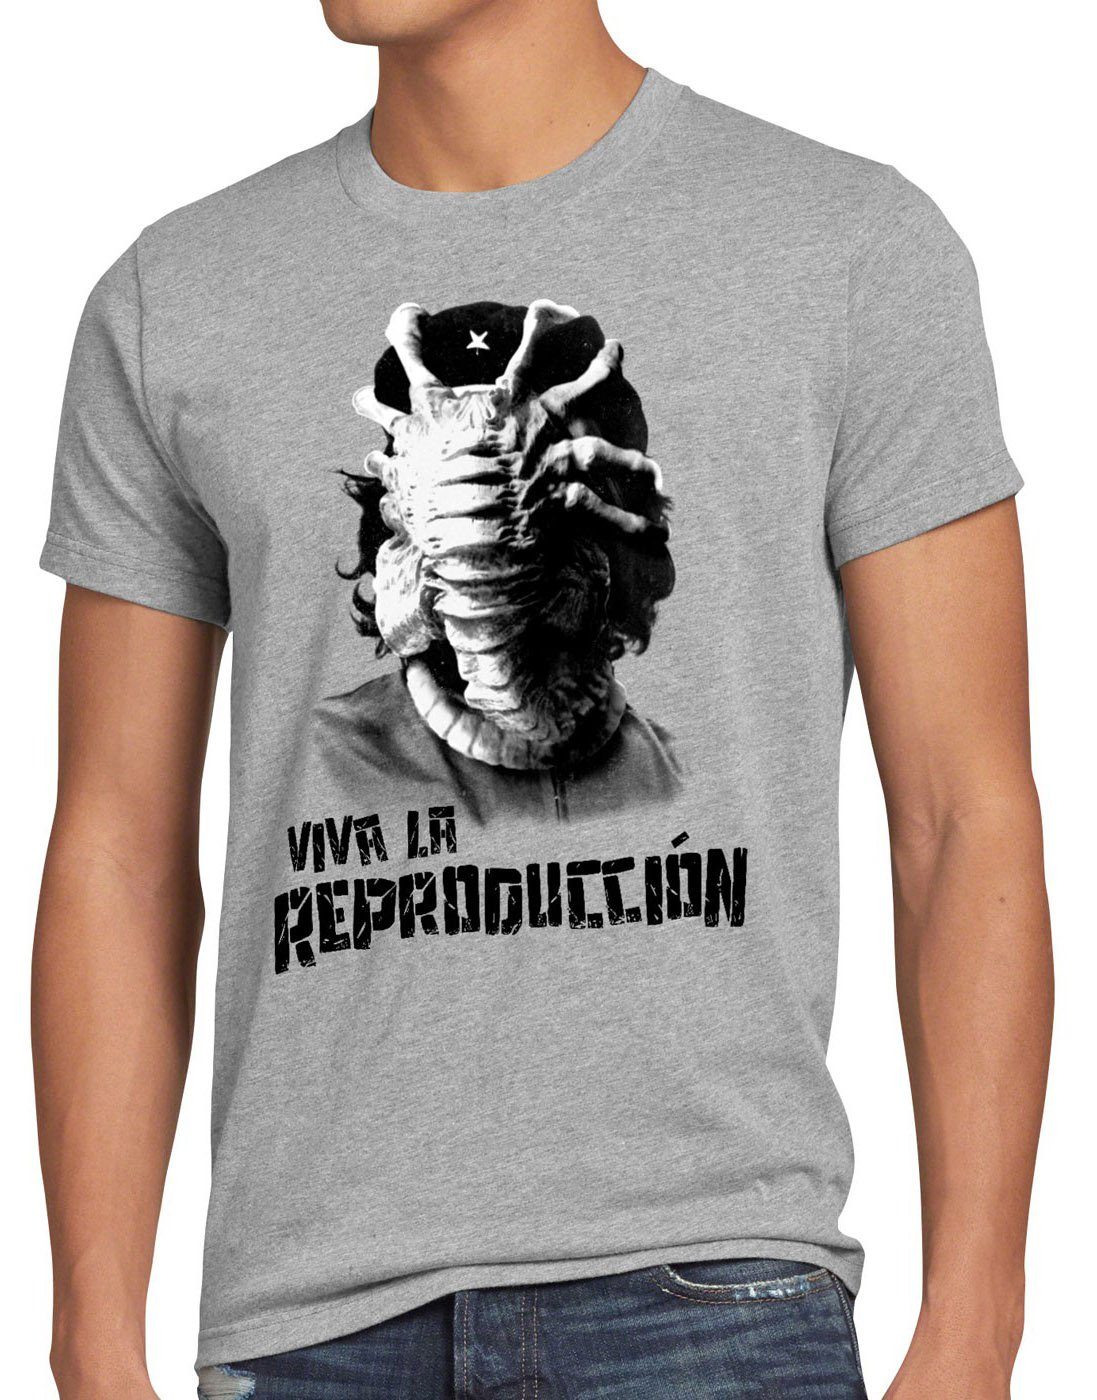 Viva kino style3 revolution Facehugger alien guevara Print-Shirt che xenomorph kuba Herren grau meliert T-Shirt